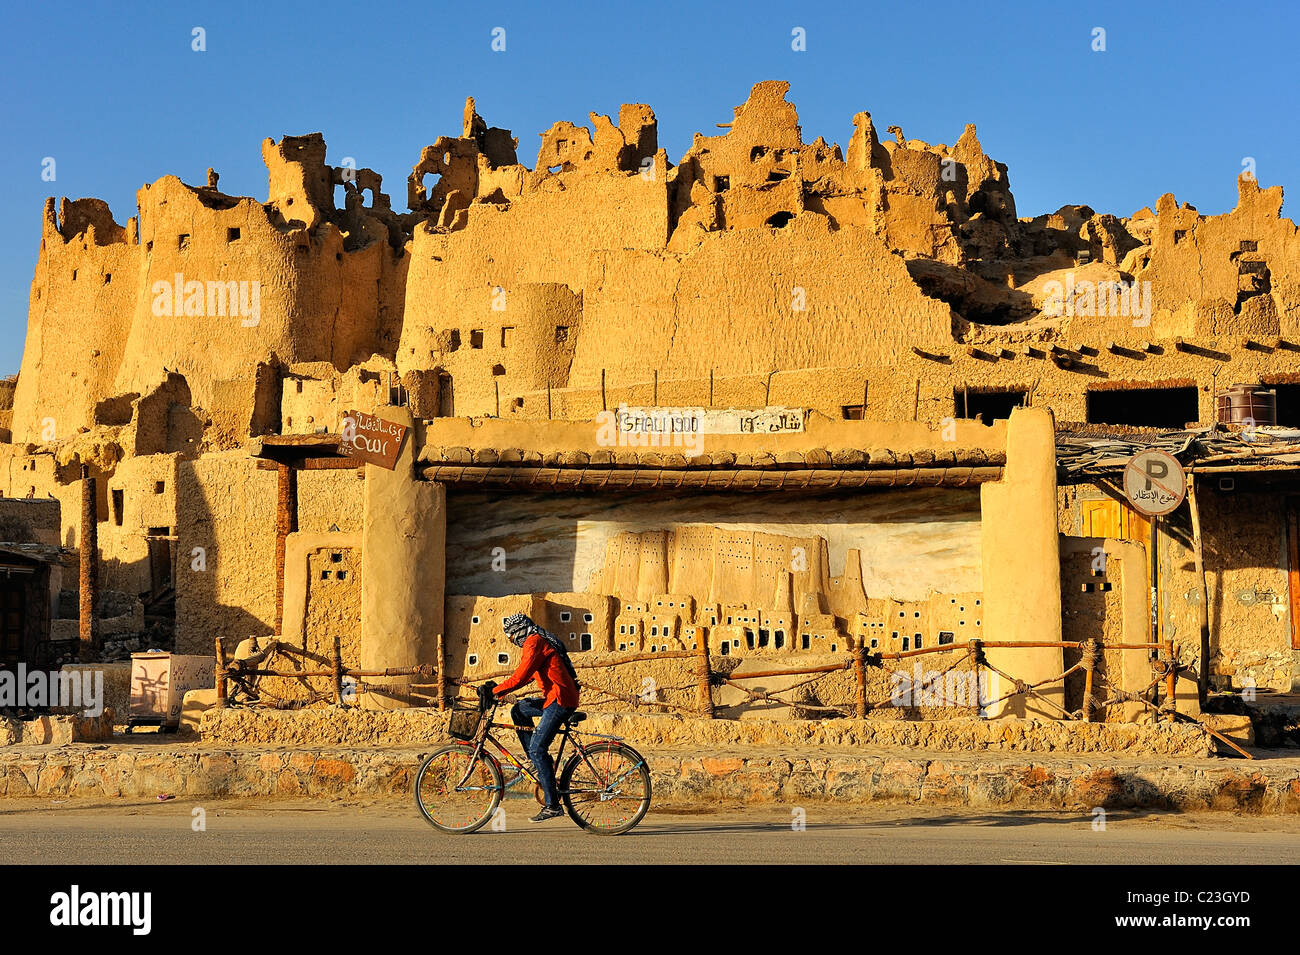 Fortification de Shali dans l'oasis de Siwa, désert occidental, l'Égypte Banque D'Images